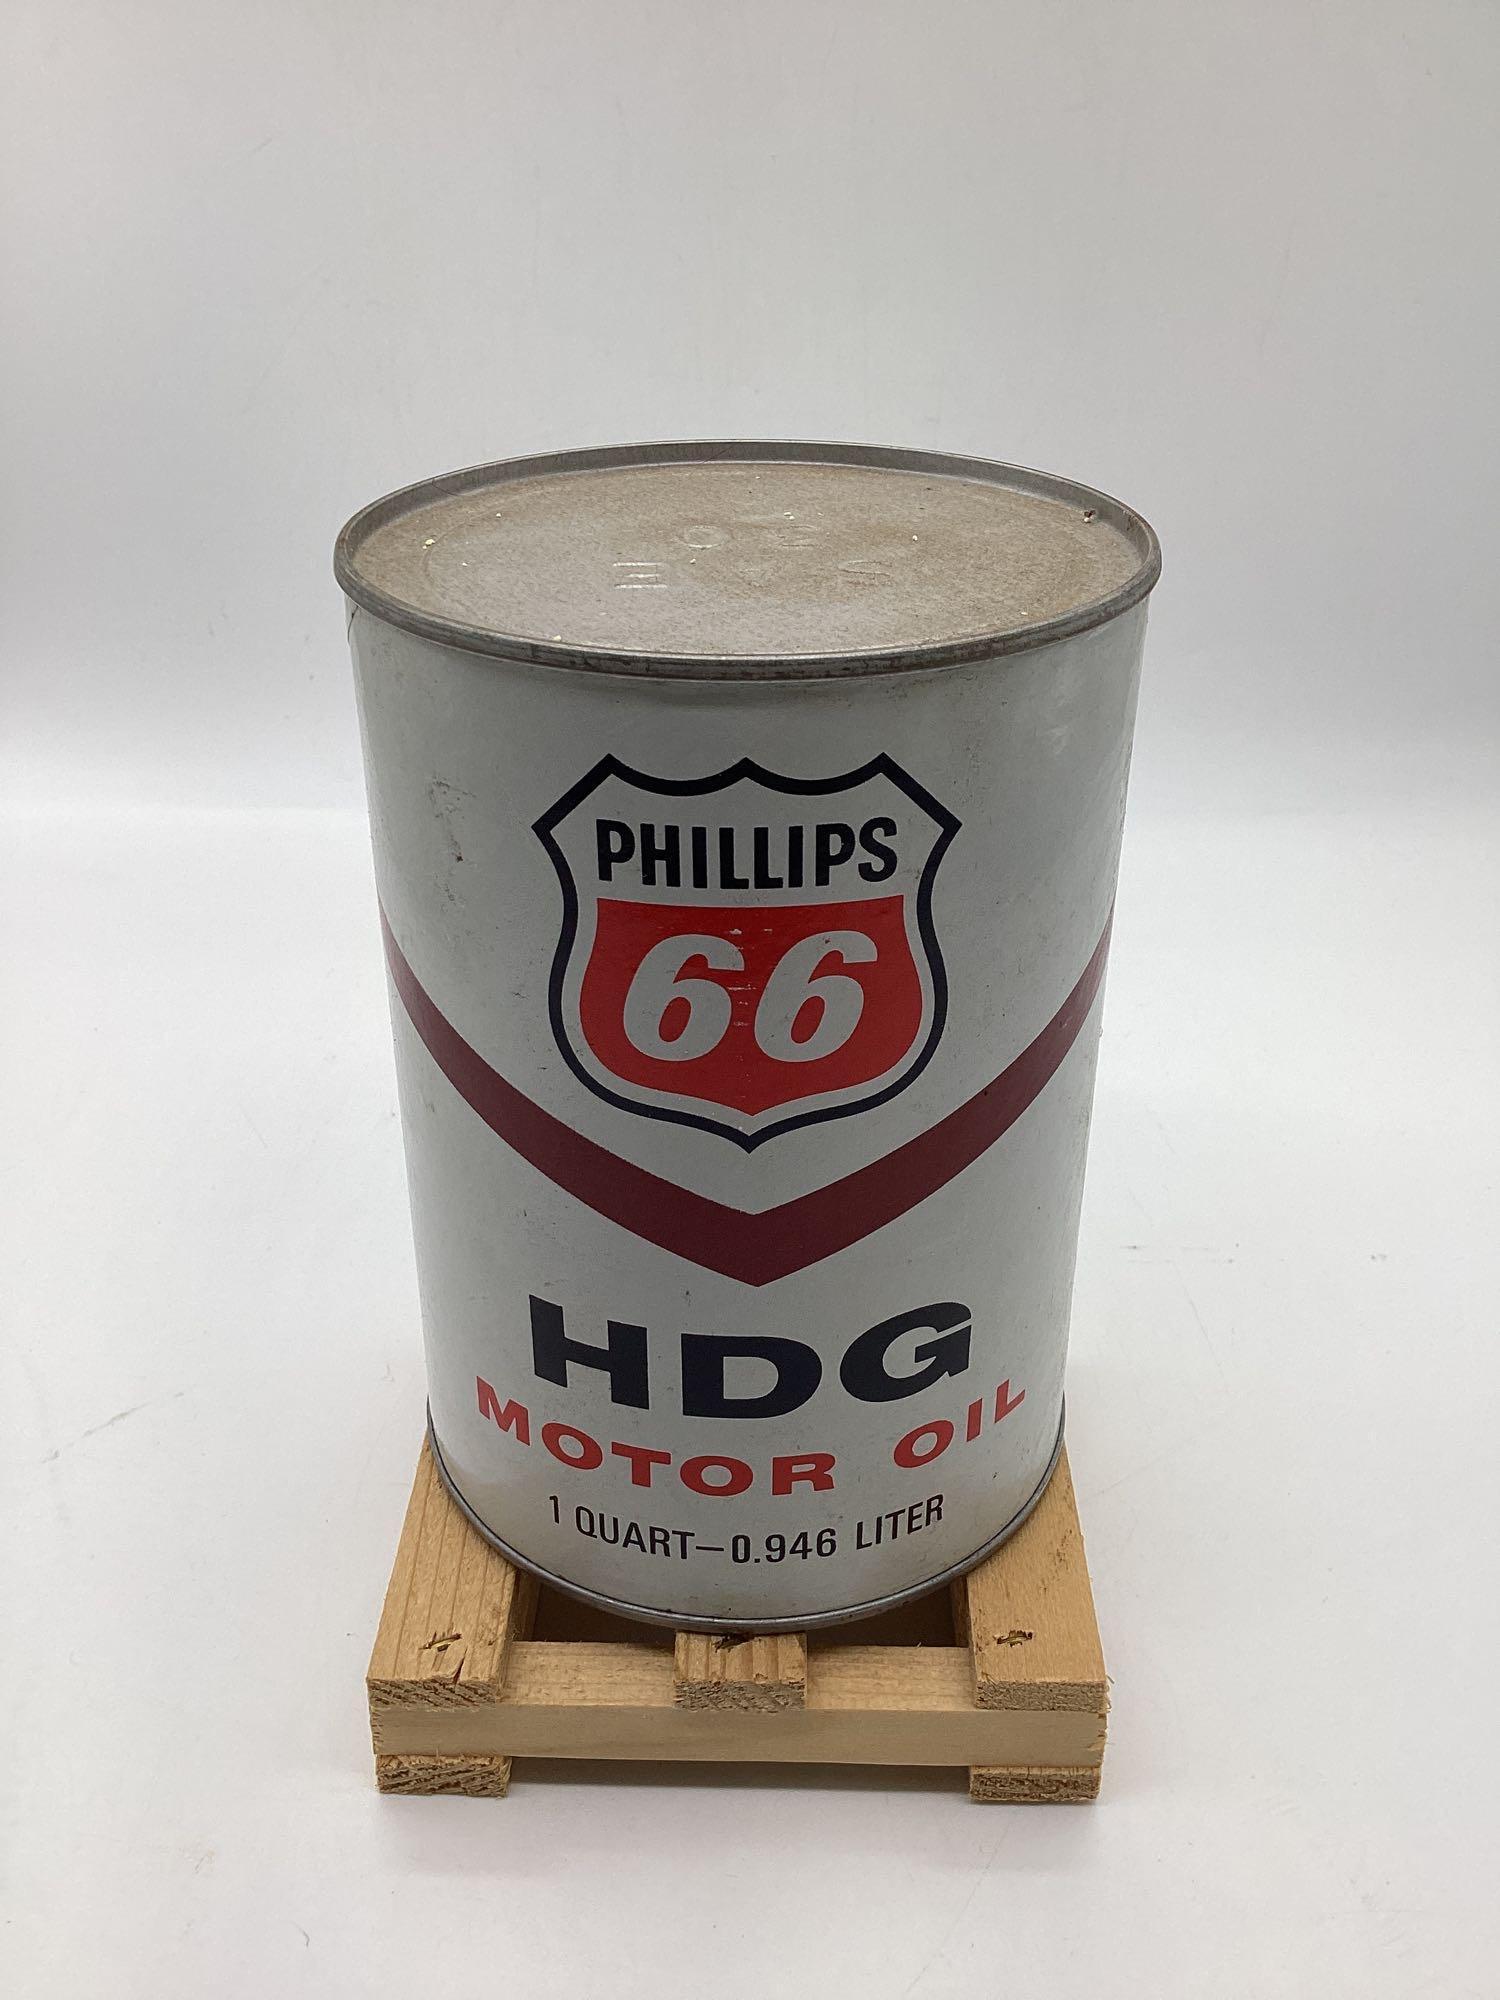 Phillips 66 HDG Quart Oil Can Bartlesville, OK